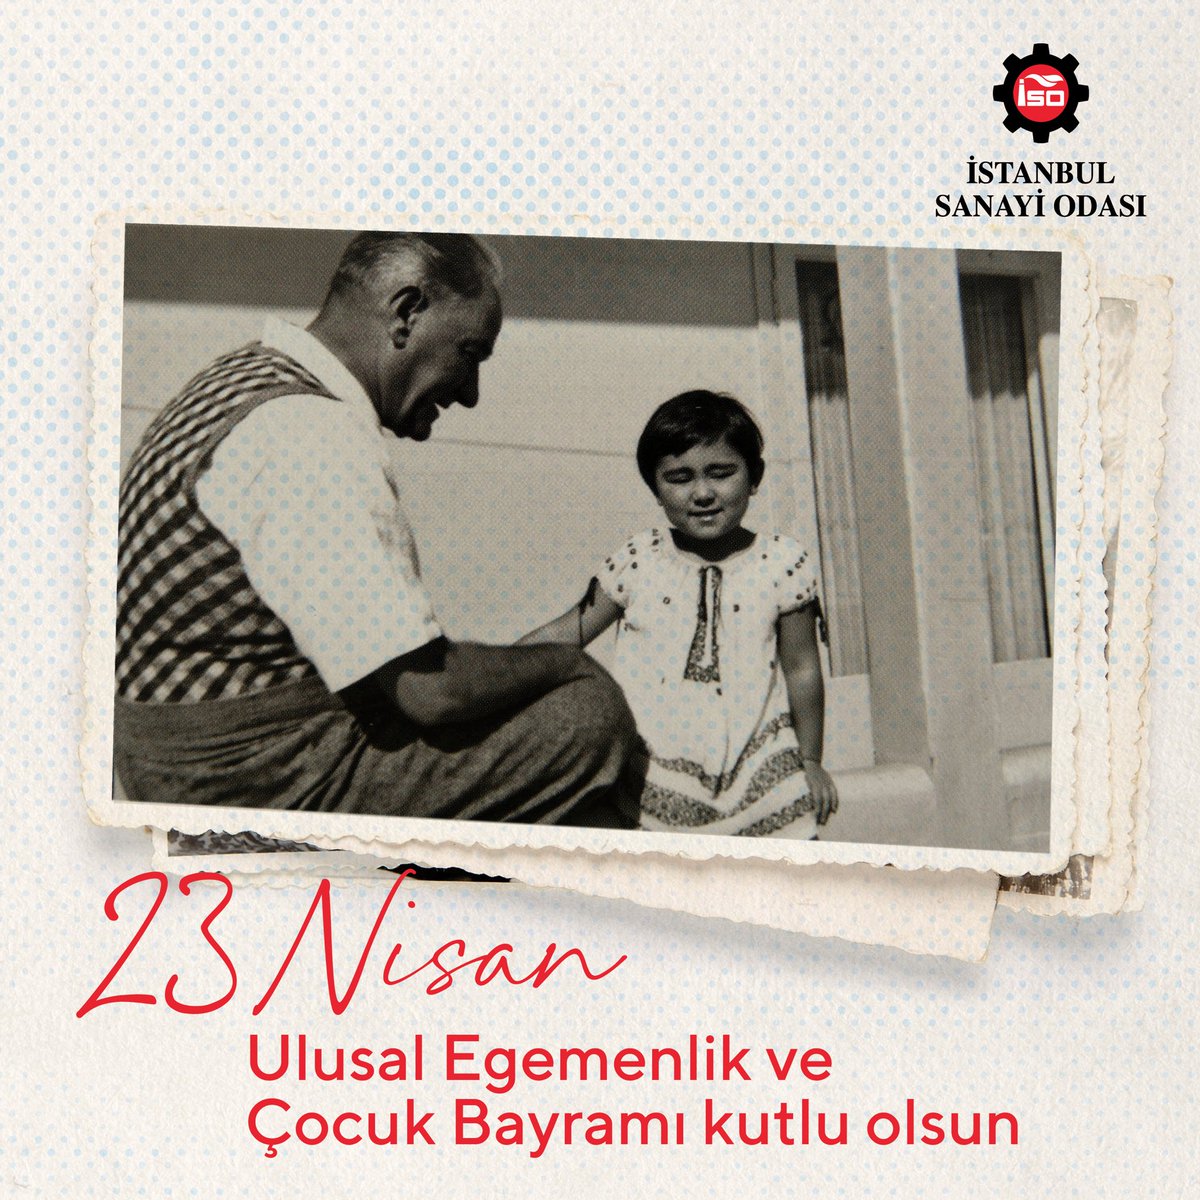 23 Nisan Ulusal Egemenlik ve Çocuk Bayramı kutlu olsun! Bugün, Gazi Mustafa Kemal Atatürk’ün çocuklara armağan ettiği bu değerli günü, barış ve sevgi dolu bir gelecek umuduyla kutluyoruz. 🇹🇷 #İSO #23Nisan #ÇocukBayramı